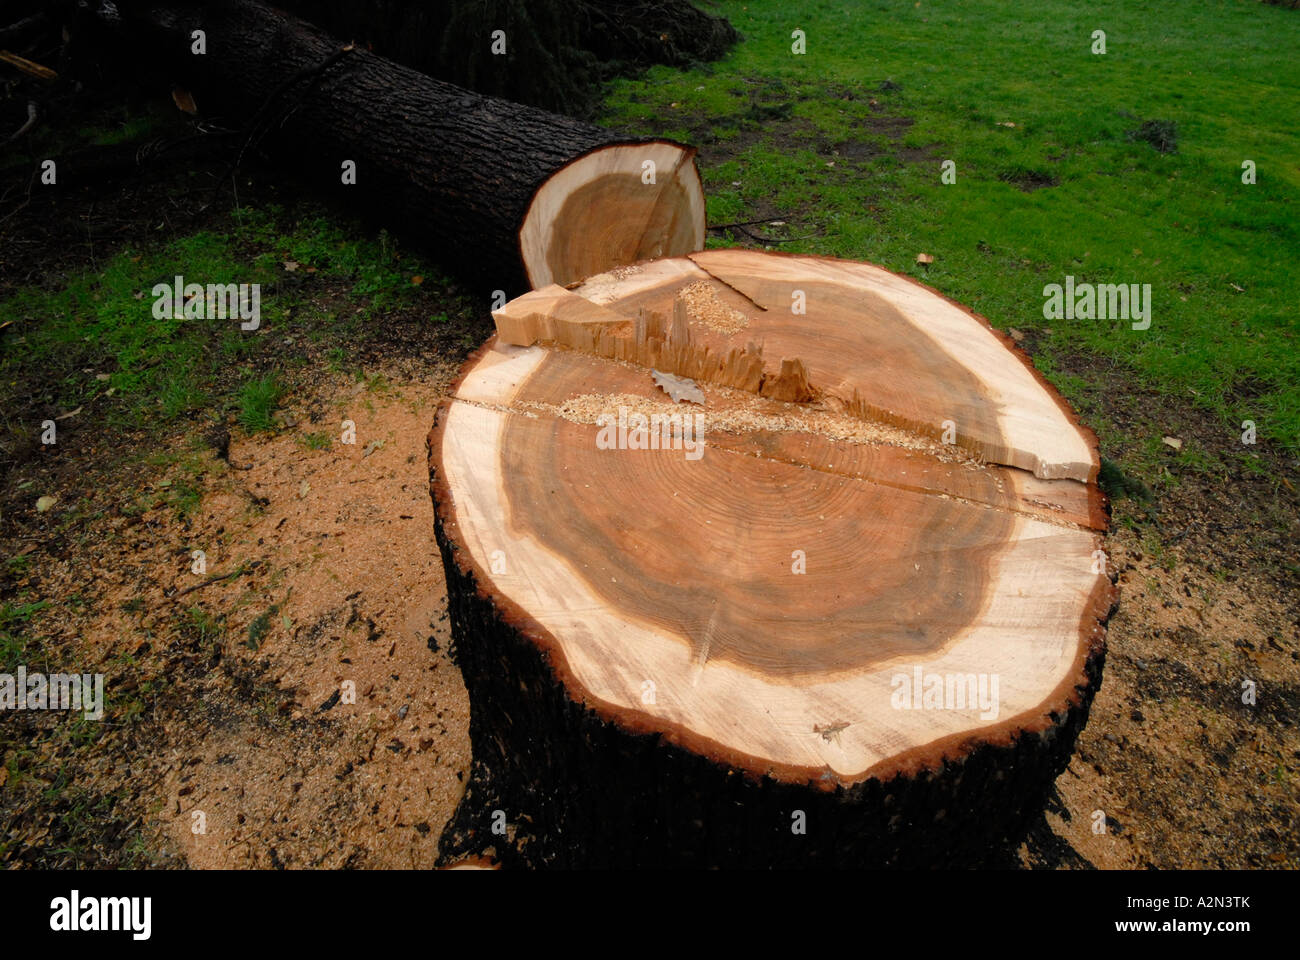 Cypress stumpf nach London Bauträger Baum gefällt hatte, weil "es nicht gesund" und war in der Art seines Vorschlags. Stockfoto